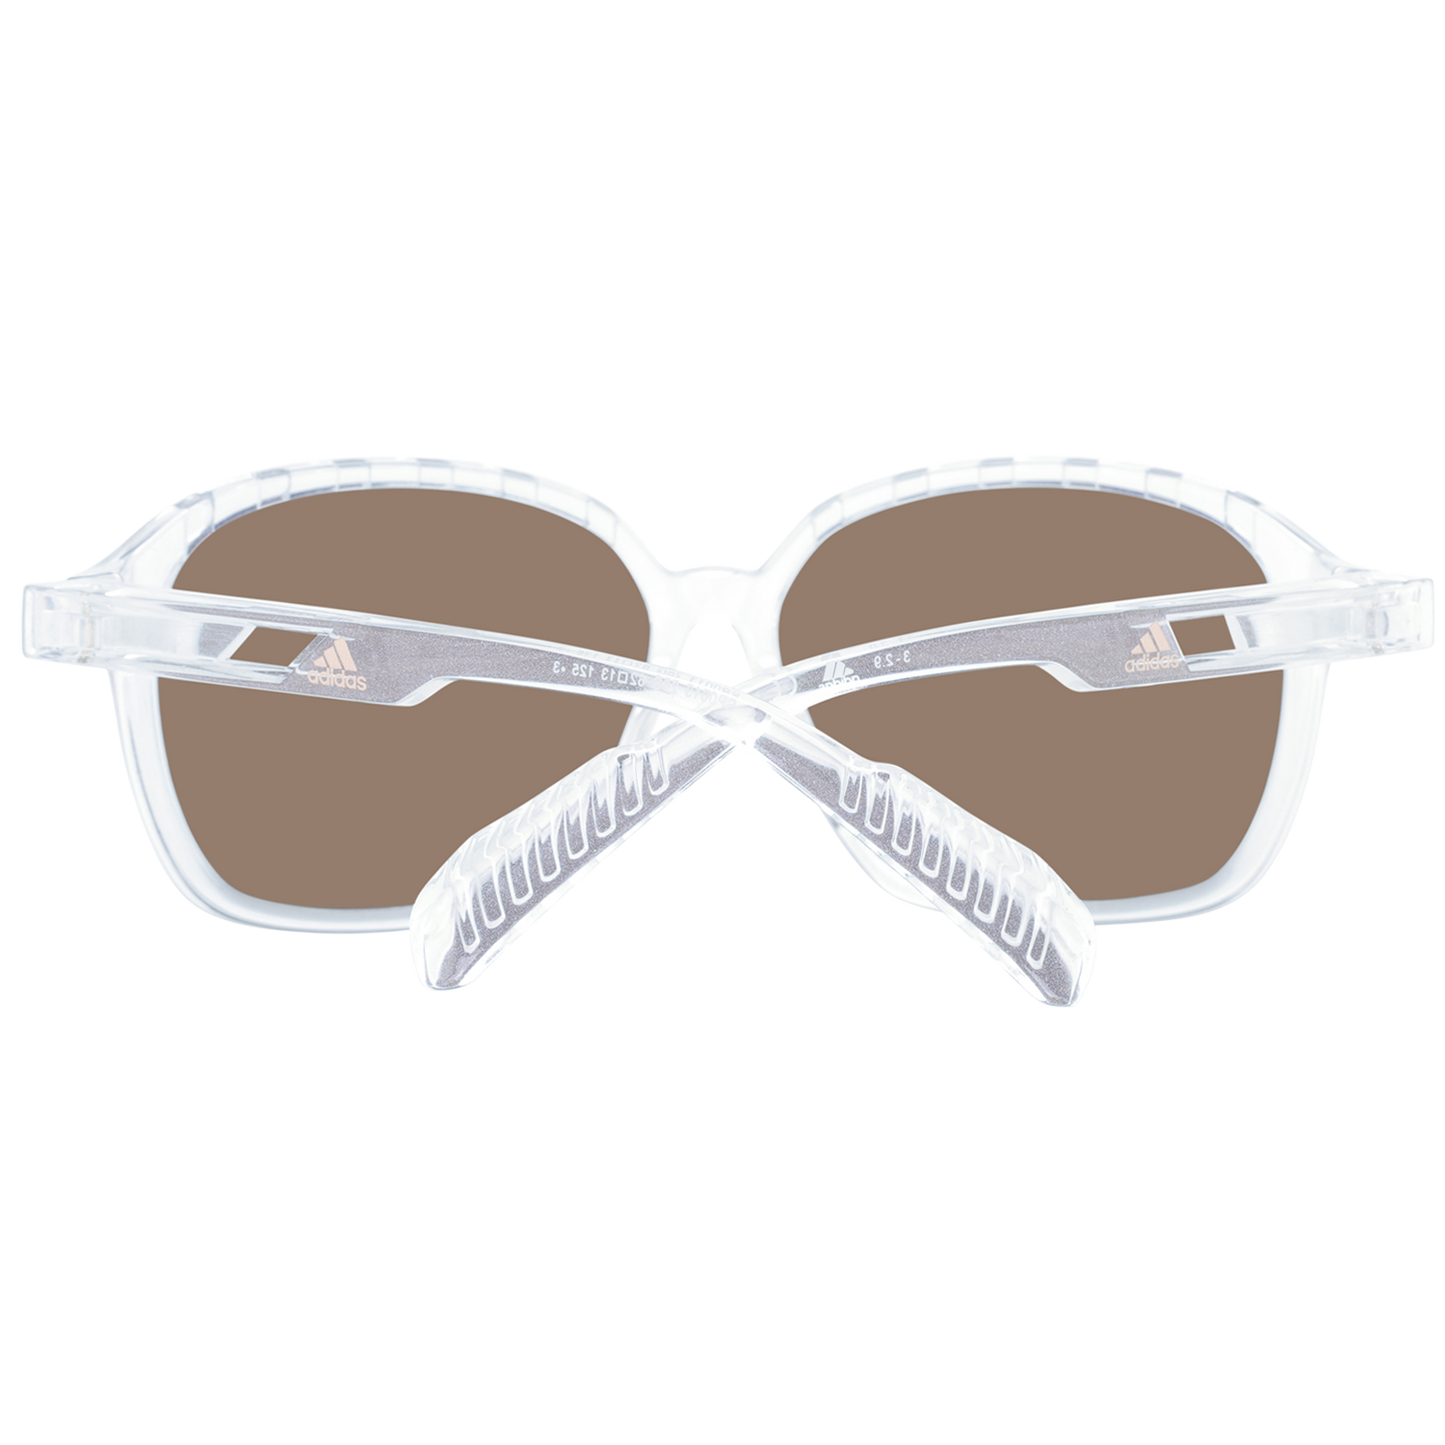 Adidas Sport Sunglasses SP0013 26G 62